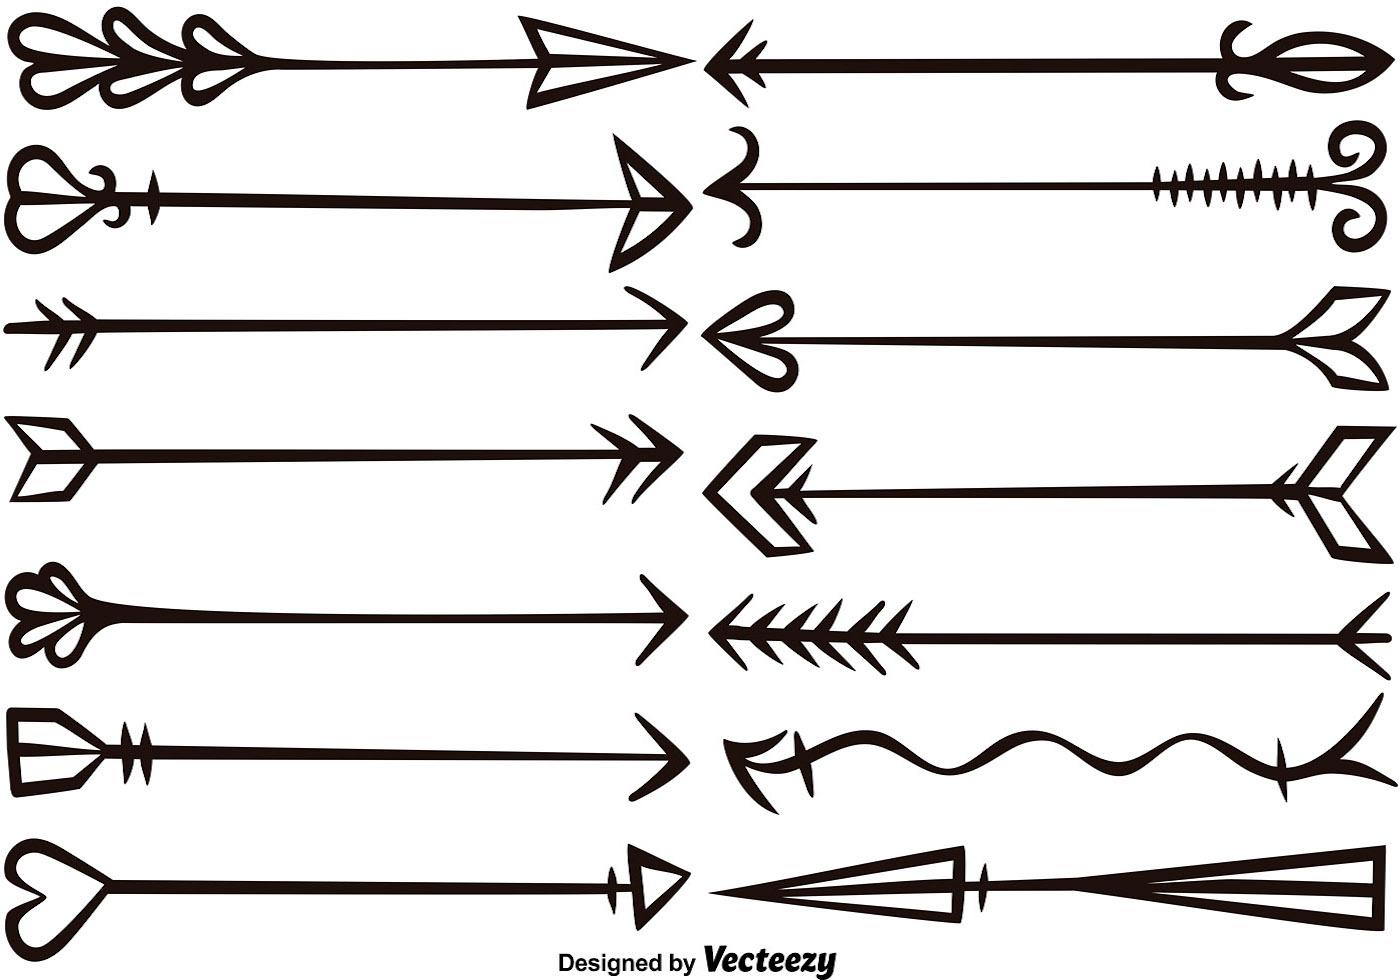 Download Vector Hand Drawn Arrows Set 114000 - Download Free Vectors, Clipart Graphics & Vector Art